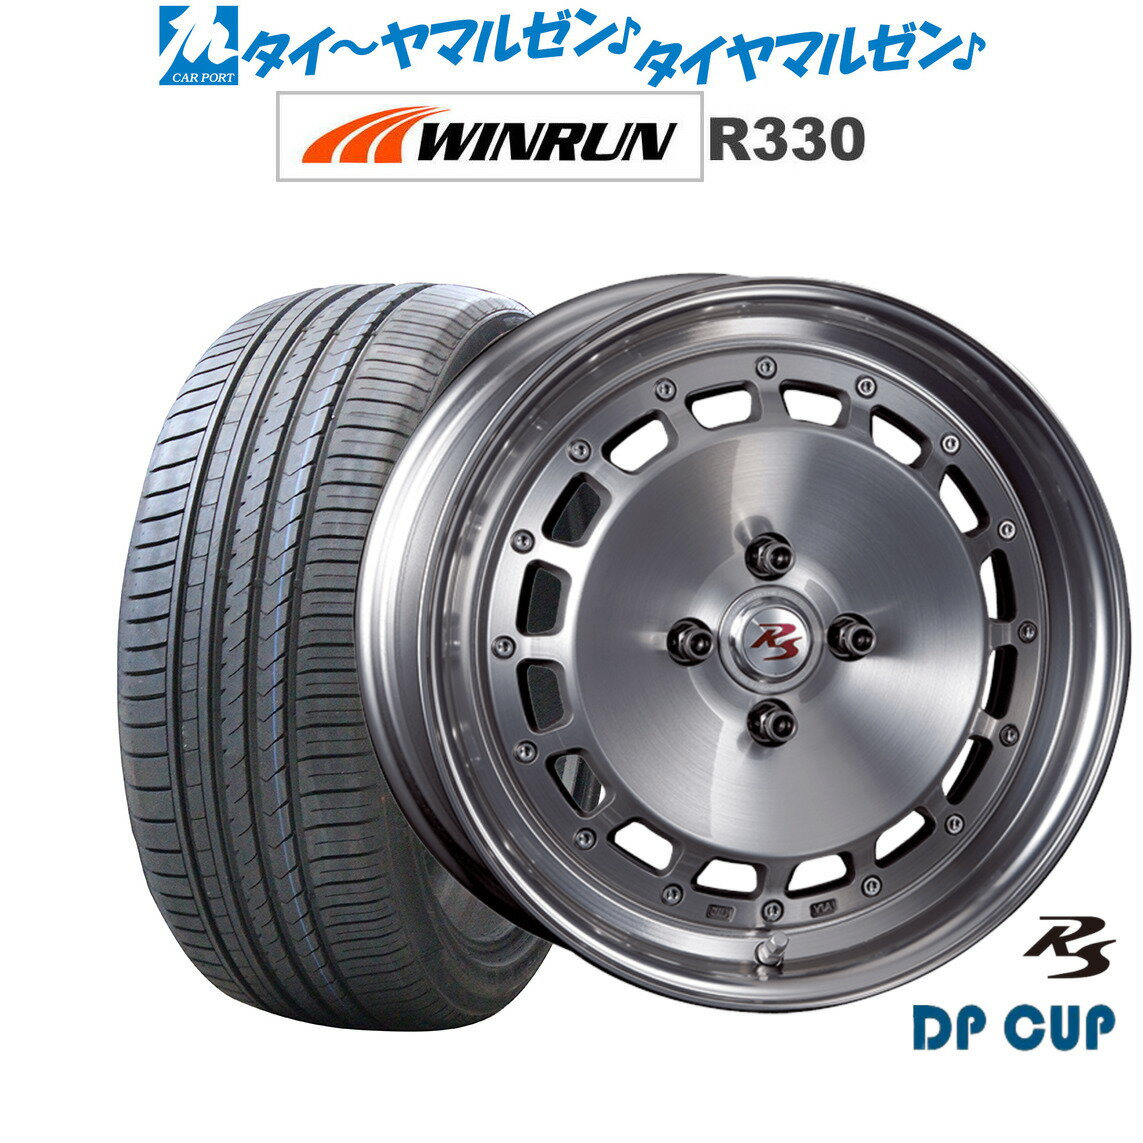 新品 サマータイヤ ホイール4本セットクリムソン RS DP CUP モノブロック16インチ 5.5JWINRUN ウインラン R330165/50R16